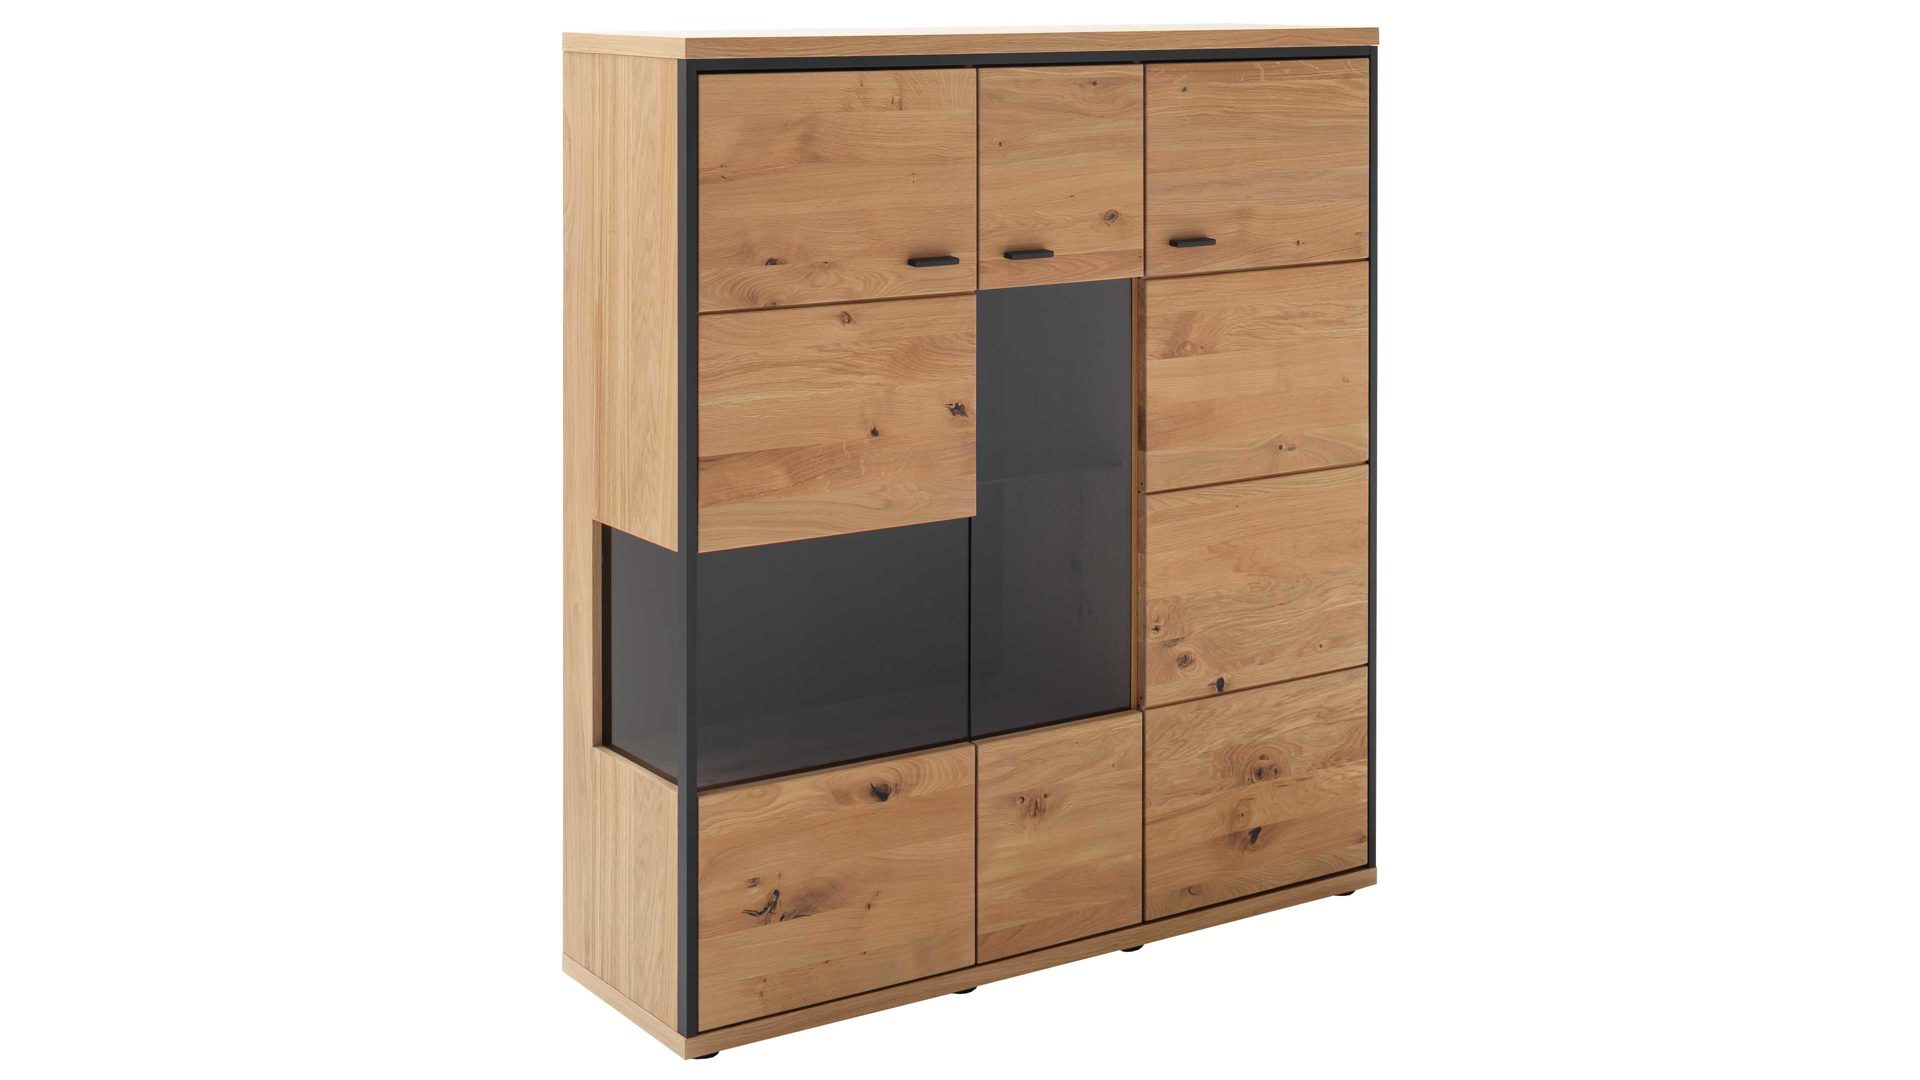 Highboard Mca furniture aus Holz in Holzfarben Wohnprogramm Bari - Highboard Asteiche Bianco – eine Tür, Breite ca. 123 cm